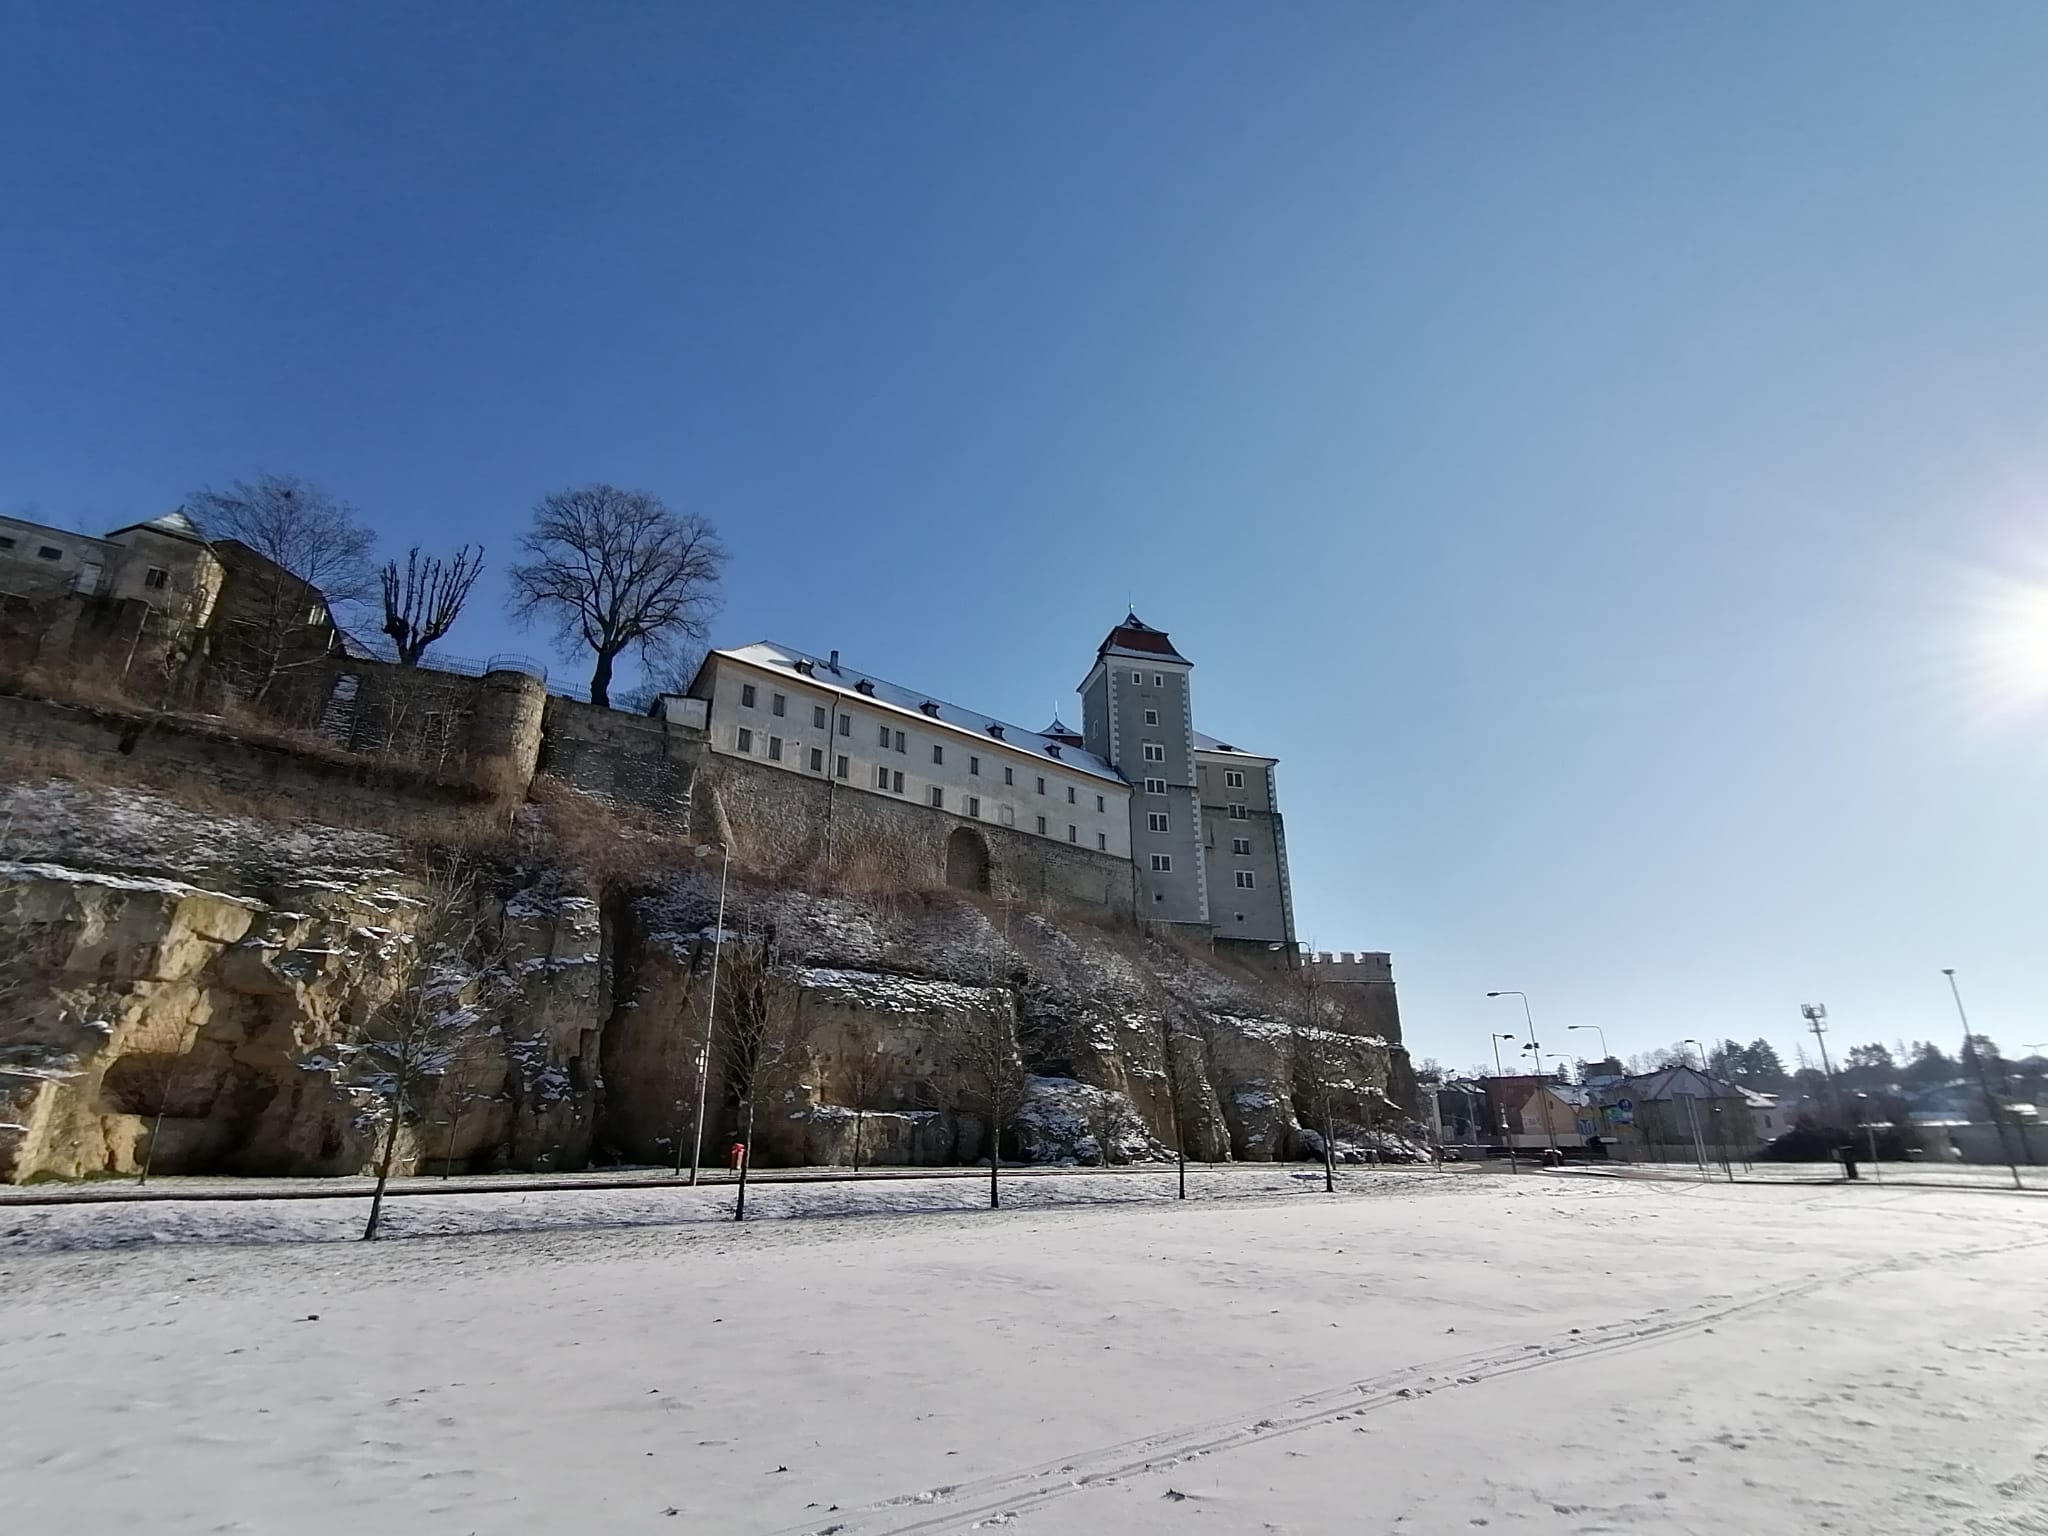 mladoboleslavský hrad navazuje na raně středověké hradiště, které na jeho místě stálo už v 10. století